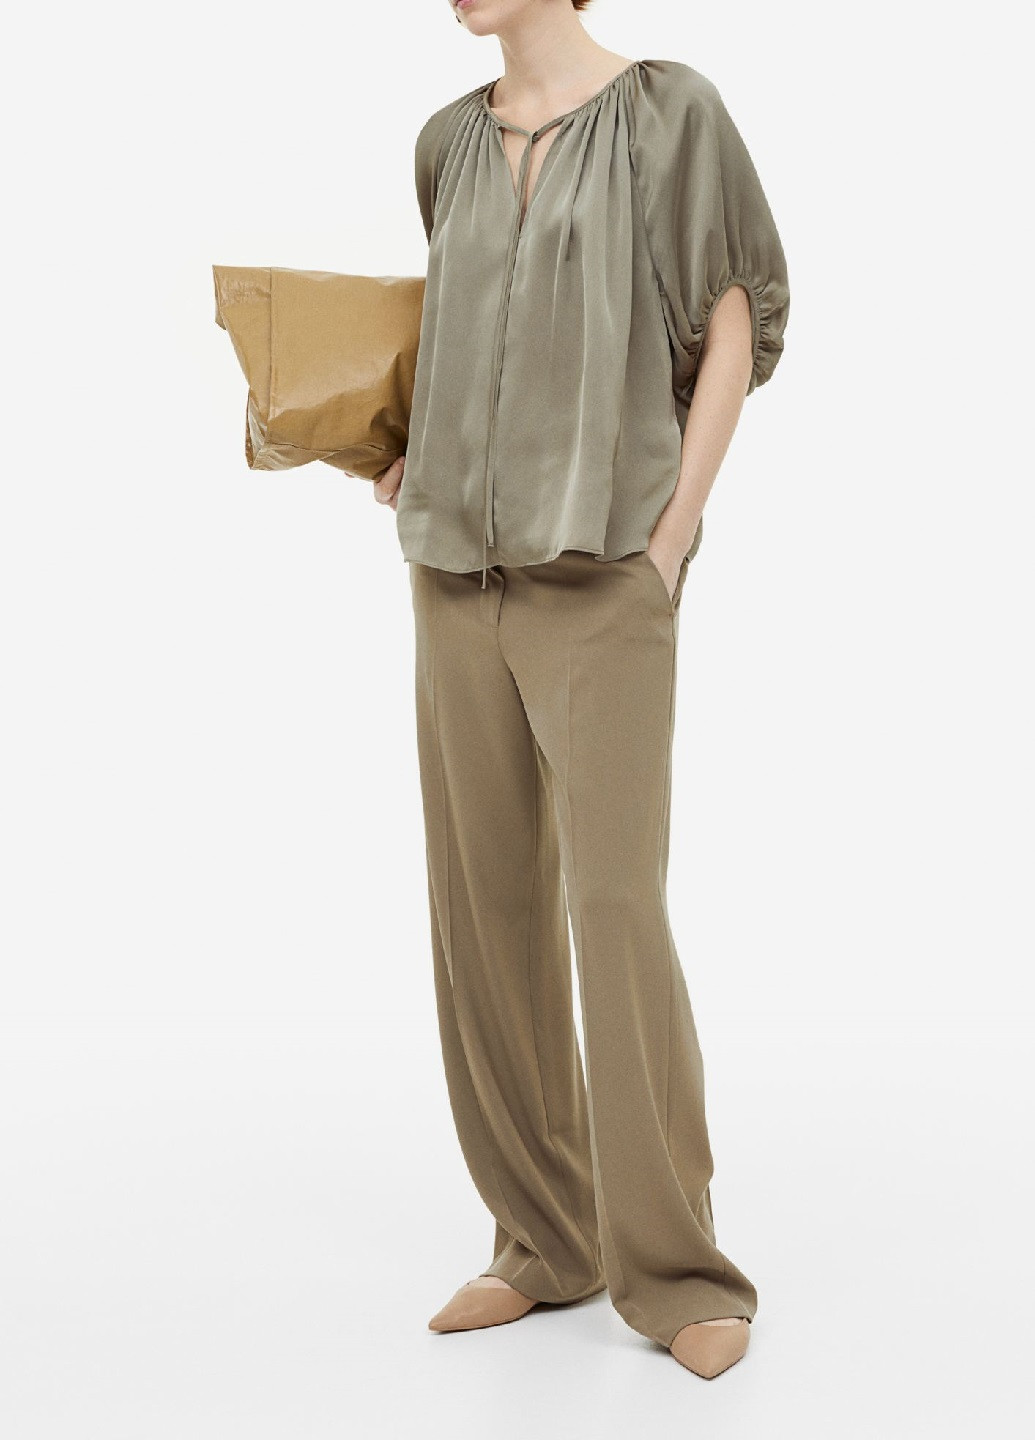 Оливковая (хаки) демисезонная блузка H&M